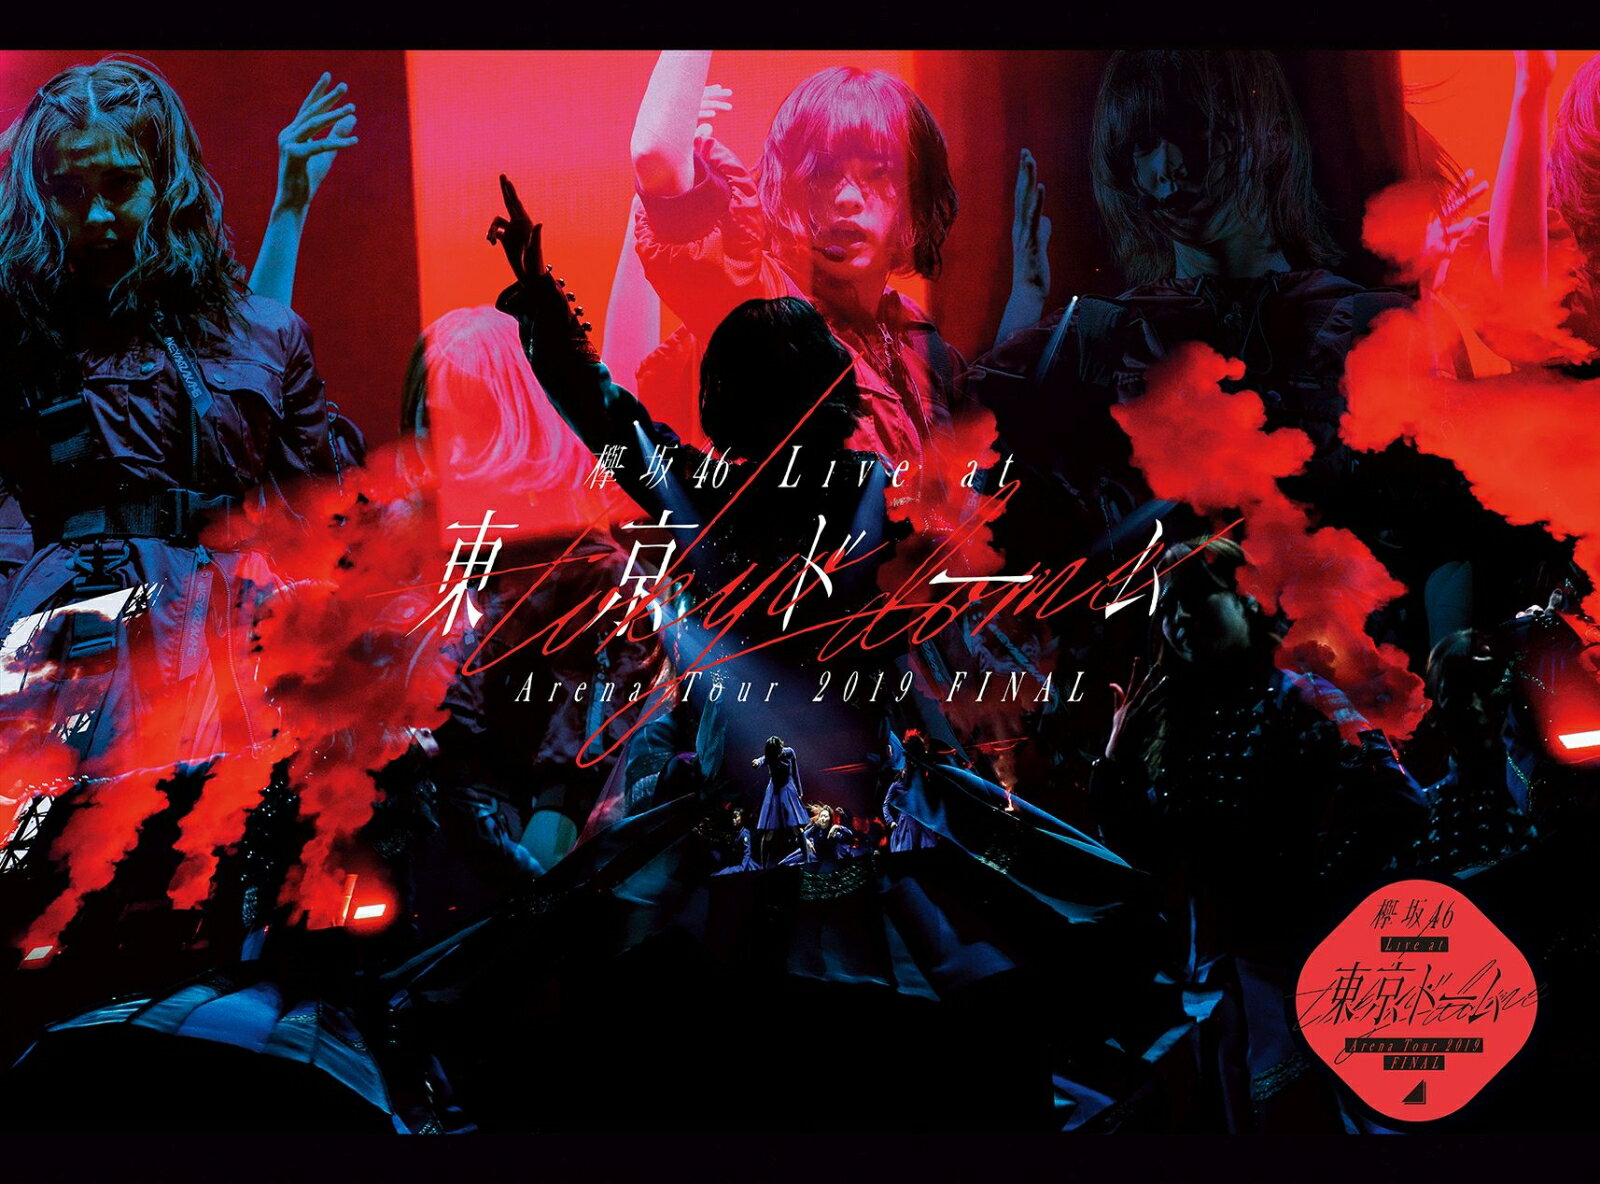 欅坂46 LIVE at 東京ドーム 〜ARENA TOUR 2019 FINAL〜(初回生産限定盤)